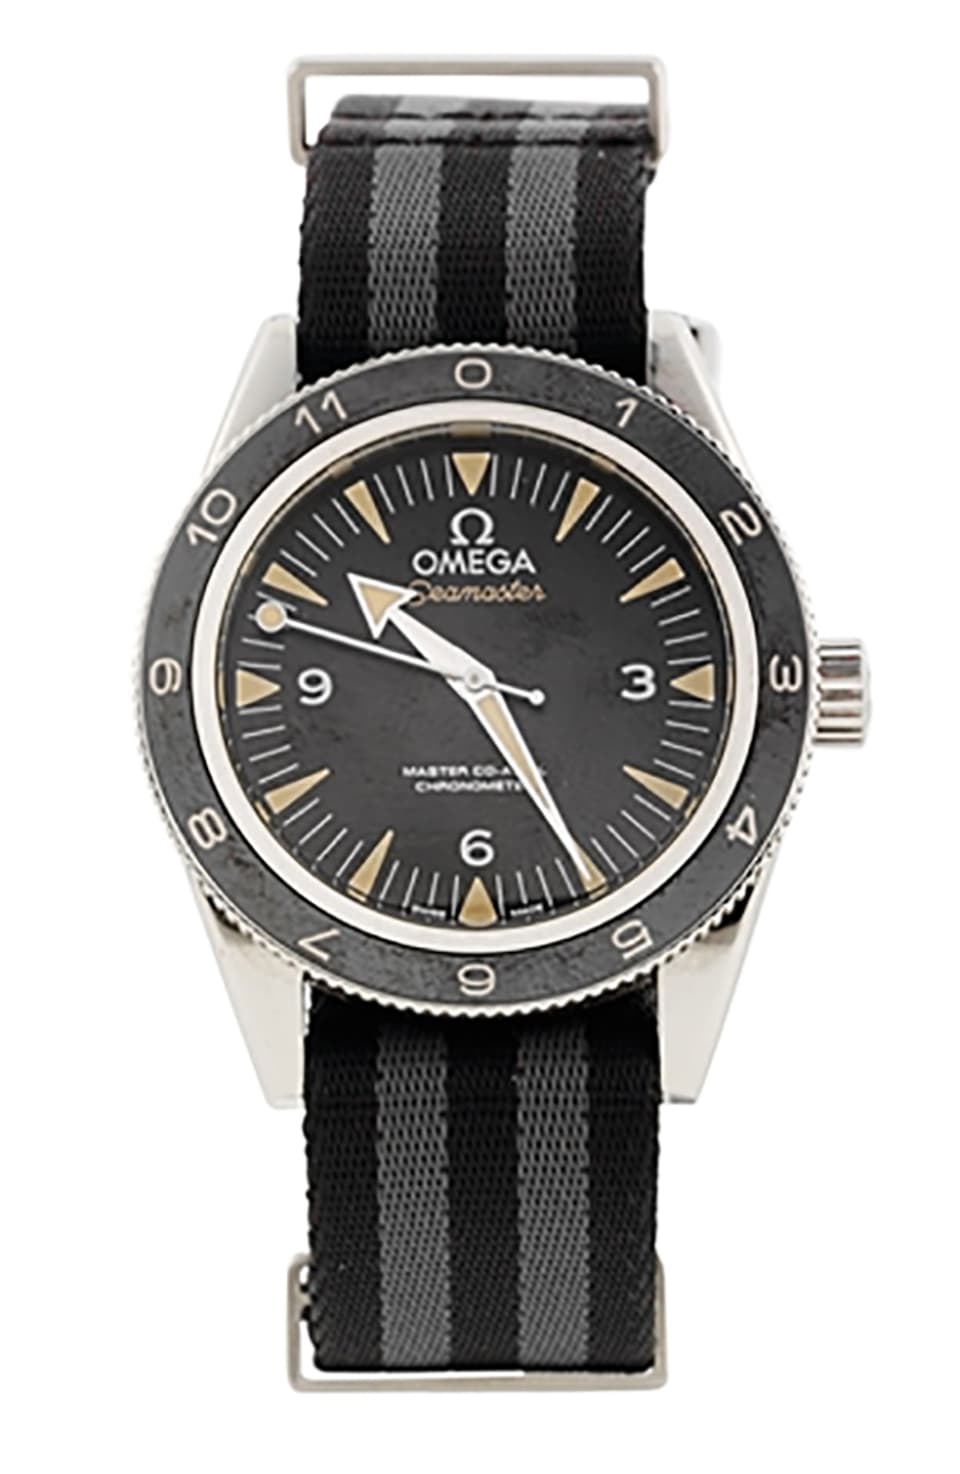 Die von Daniel Craig getragene Omega Uhr soll zwischen 21'000 und 28'000 Franken einbringen.